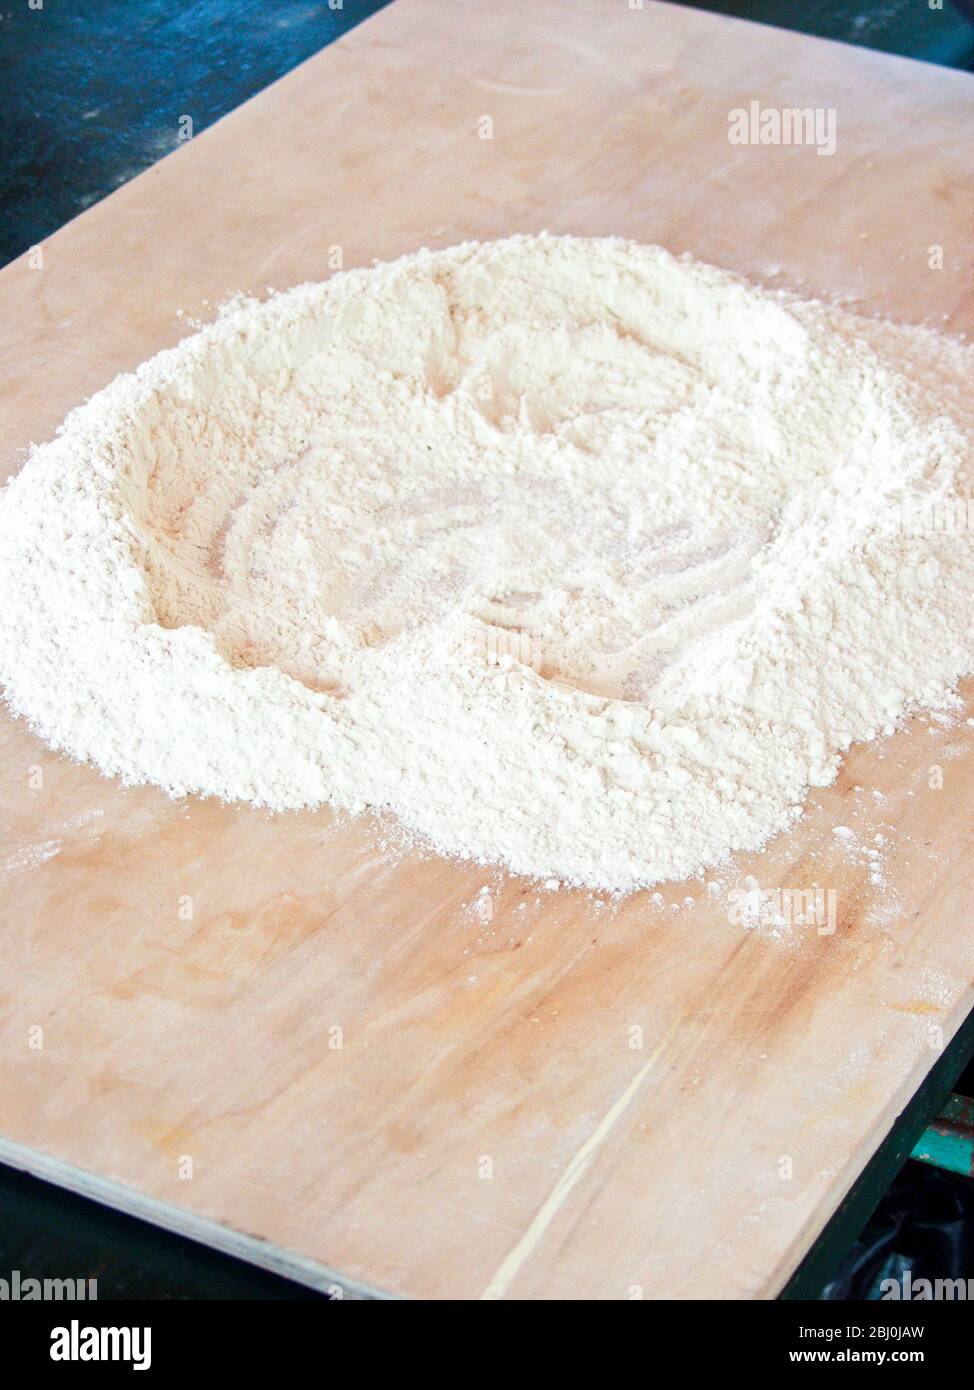 Fare un pozzo di farina su un asse di legno come prima fase di fare gnocchi - Foto Stock